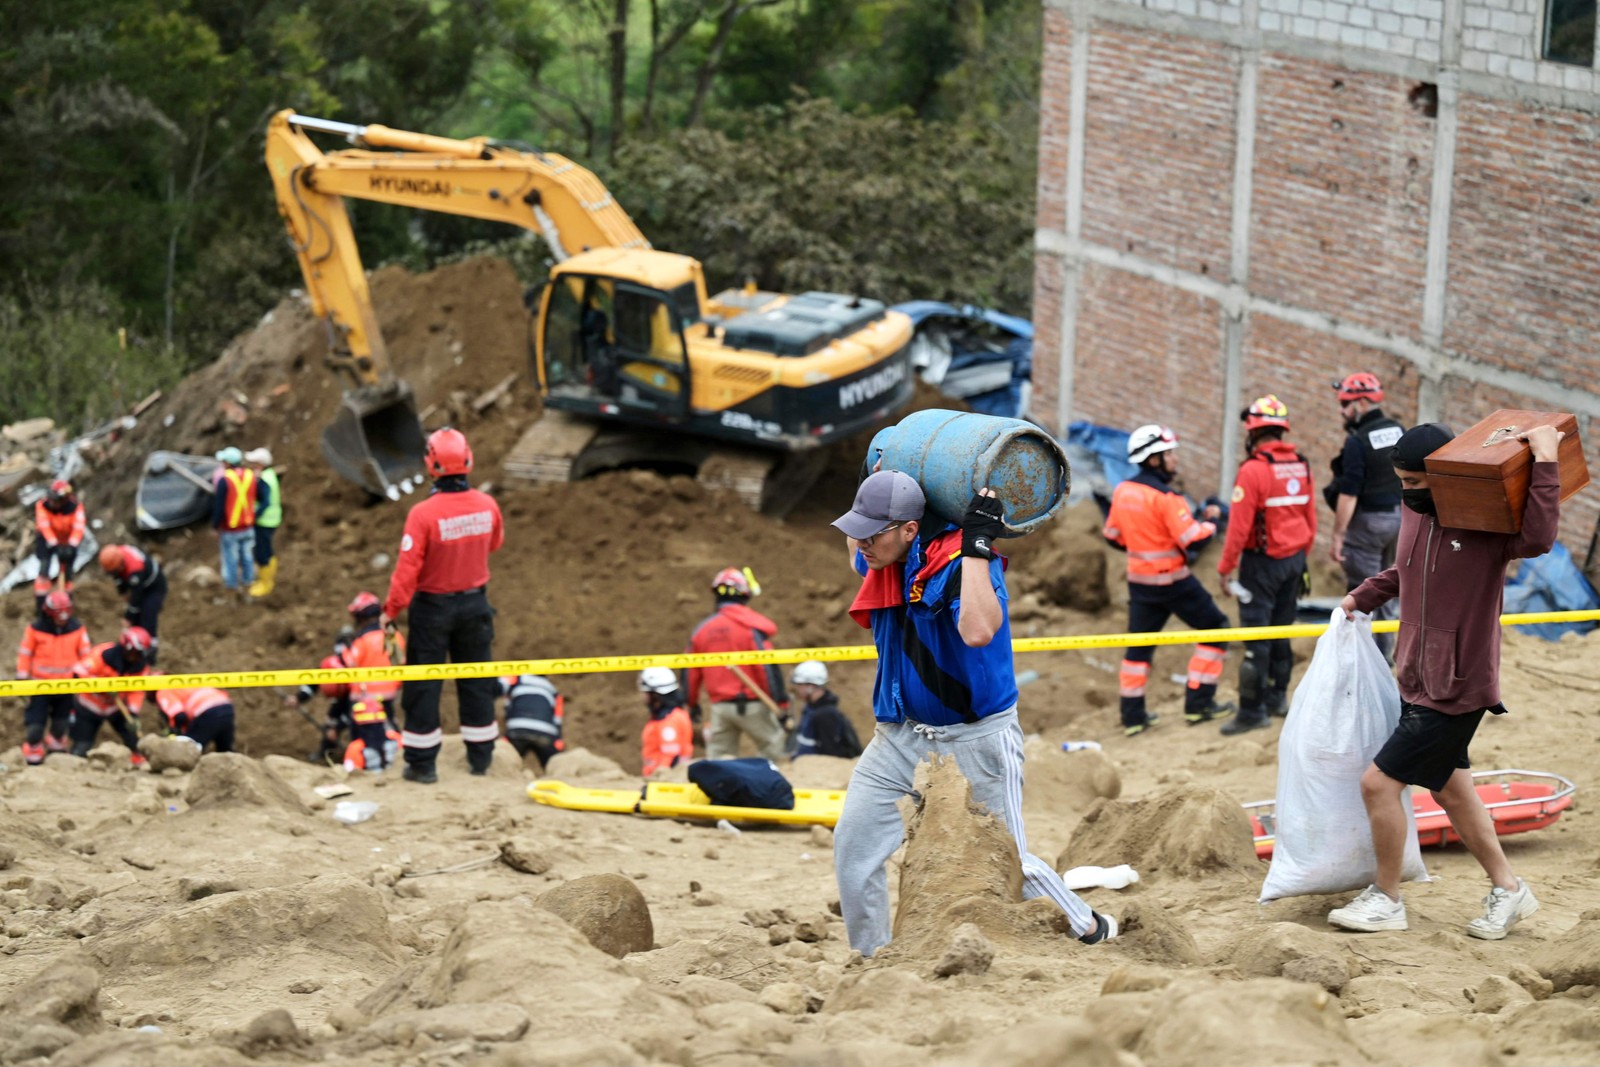 Equipes de resgate buscaram desde segunda-feira mais de 60 pessoas desaparecidas depois das fortes chuvas no sul do Equador — Foto: MARCOS PIN/AFP